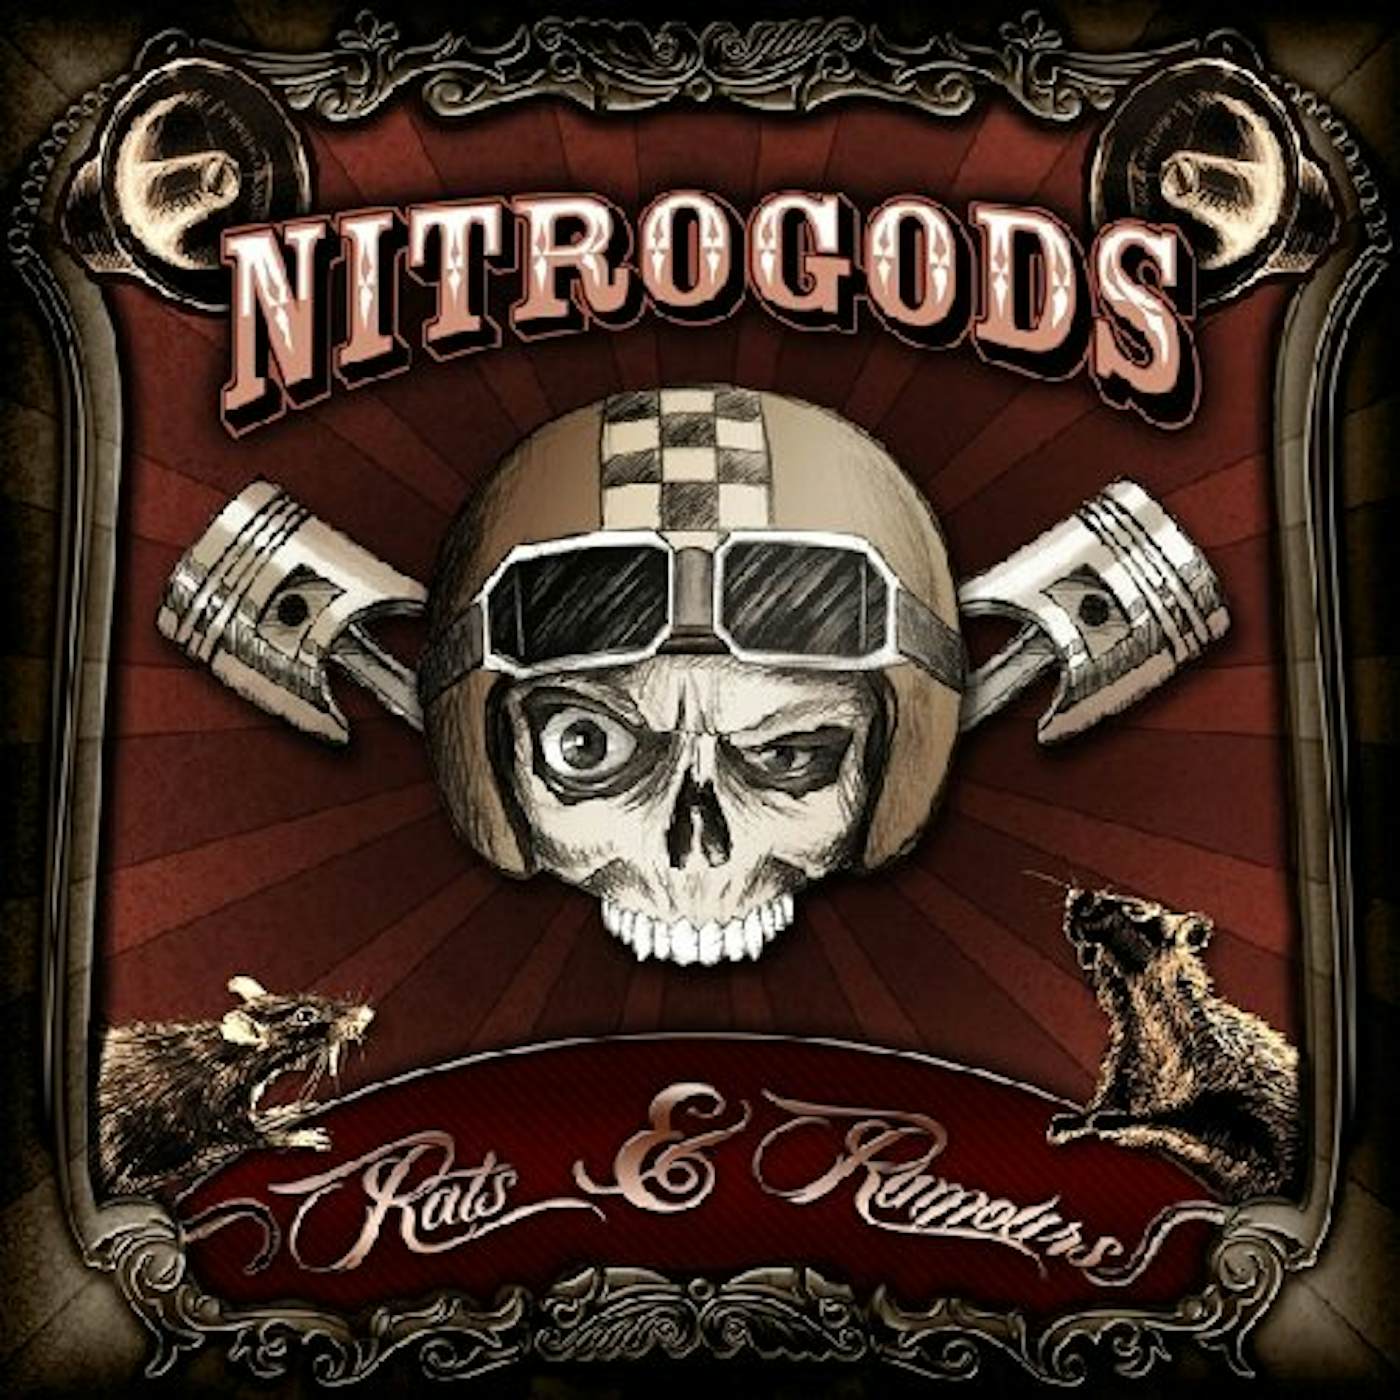 Nitrogods RATS & RUMOURS CD